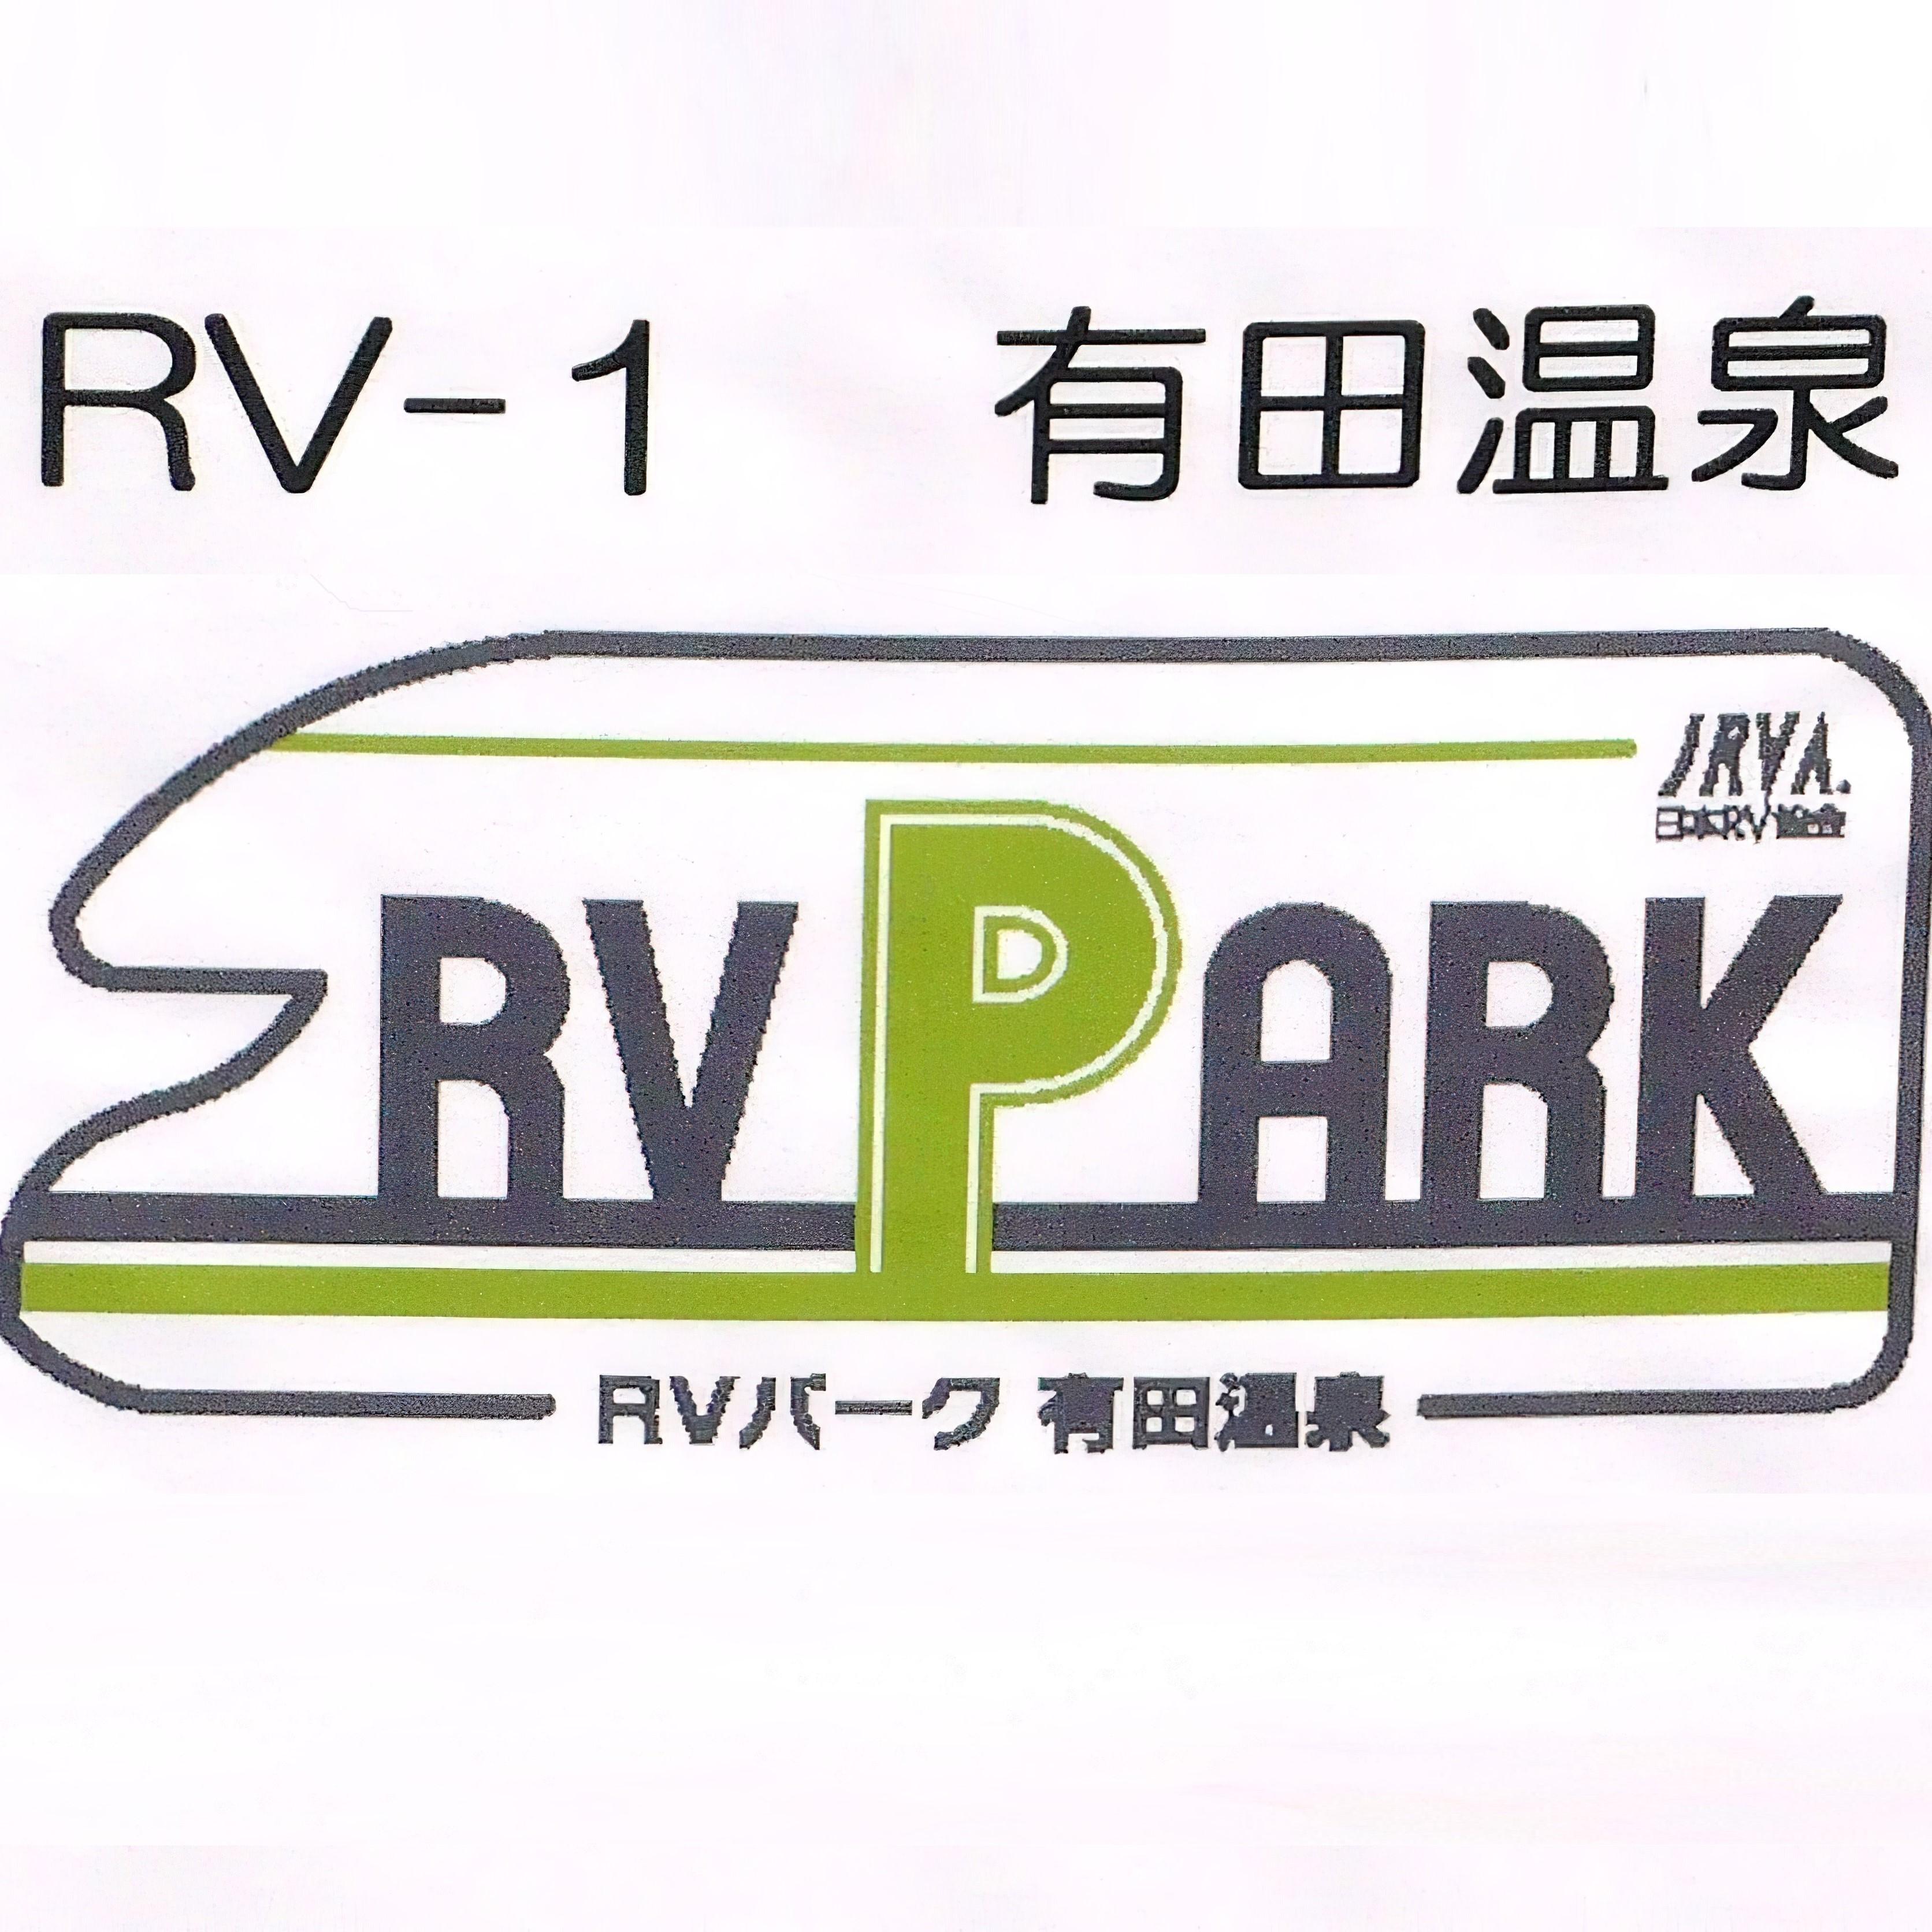 国内で、9箇所目のRVパークです。